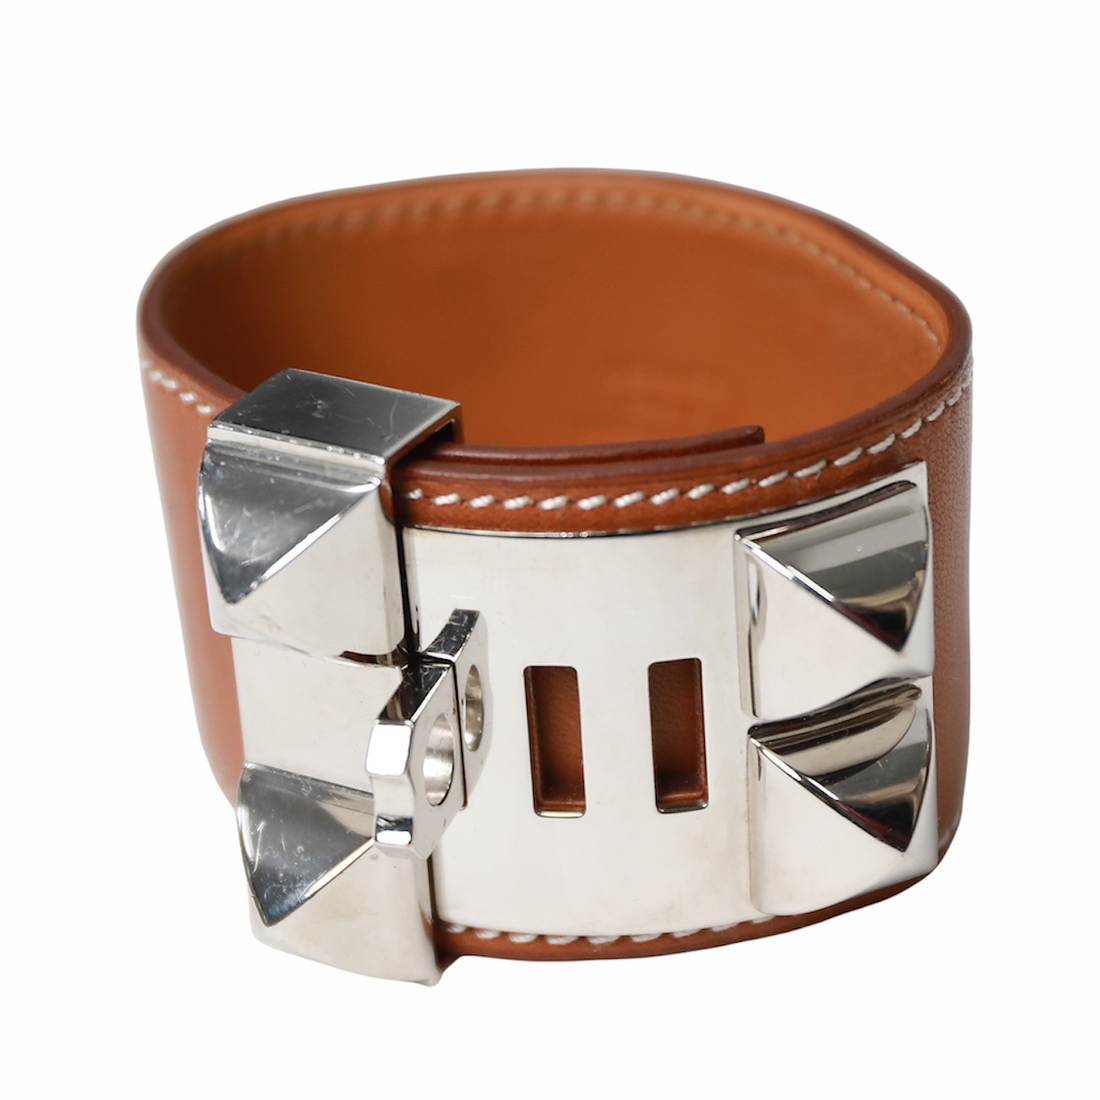 Hermès Collier de Chien leather bracelet